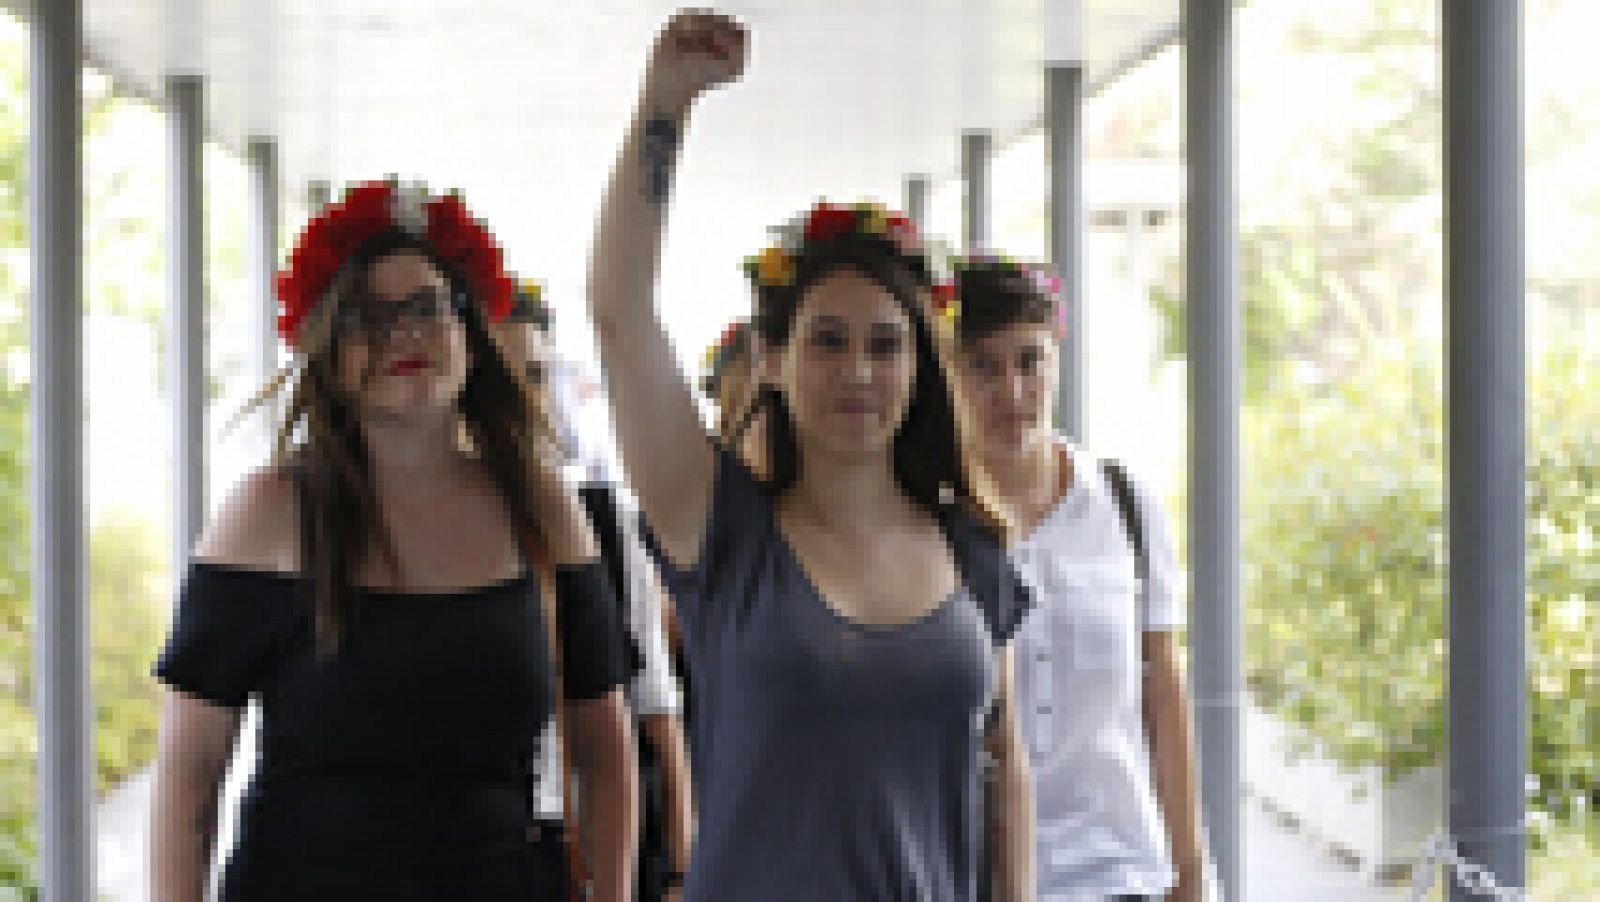 La líder del movimiento feminista Femen, Laura Alcázar, ha declarado este martes en el juicio por irrumpir semidesnuda en una marcha "provida" el 17 de noviembre de 2013 en Madrid que los manifestantes 'provida' las golpearon con paraguas, las zarand